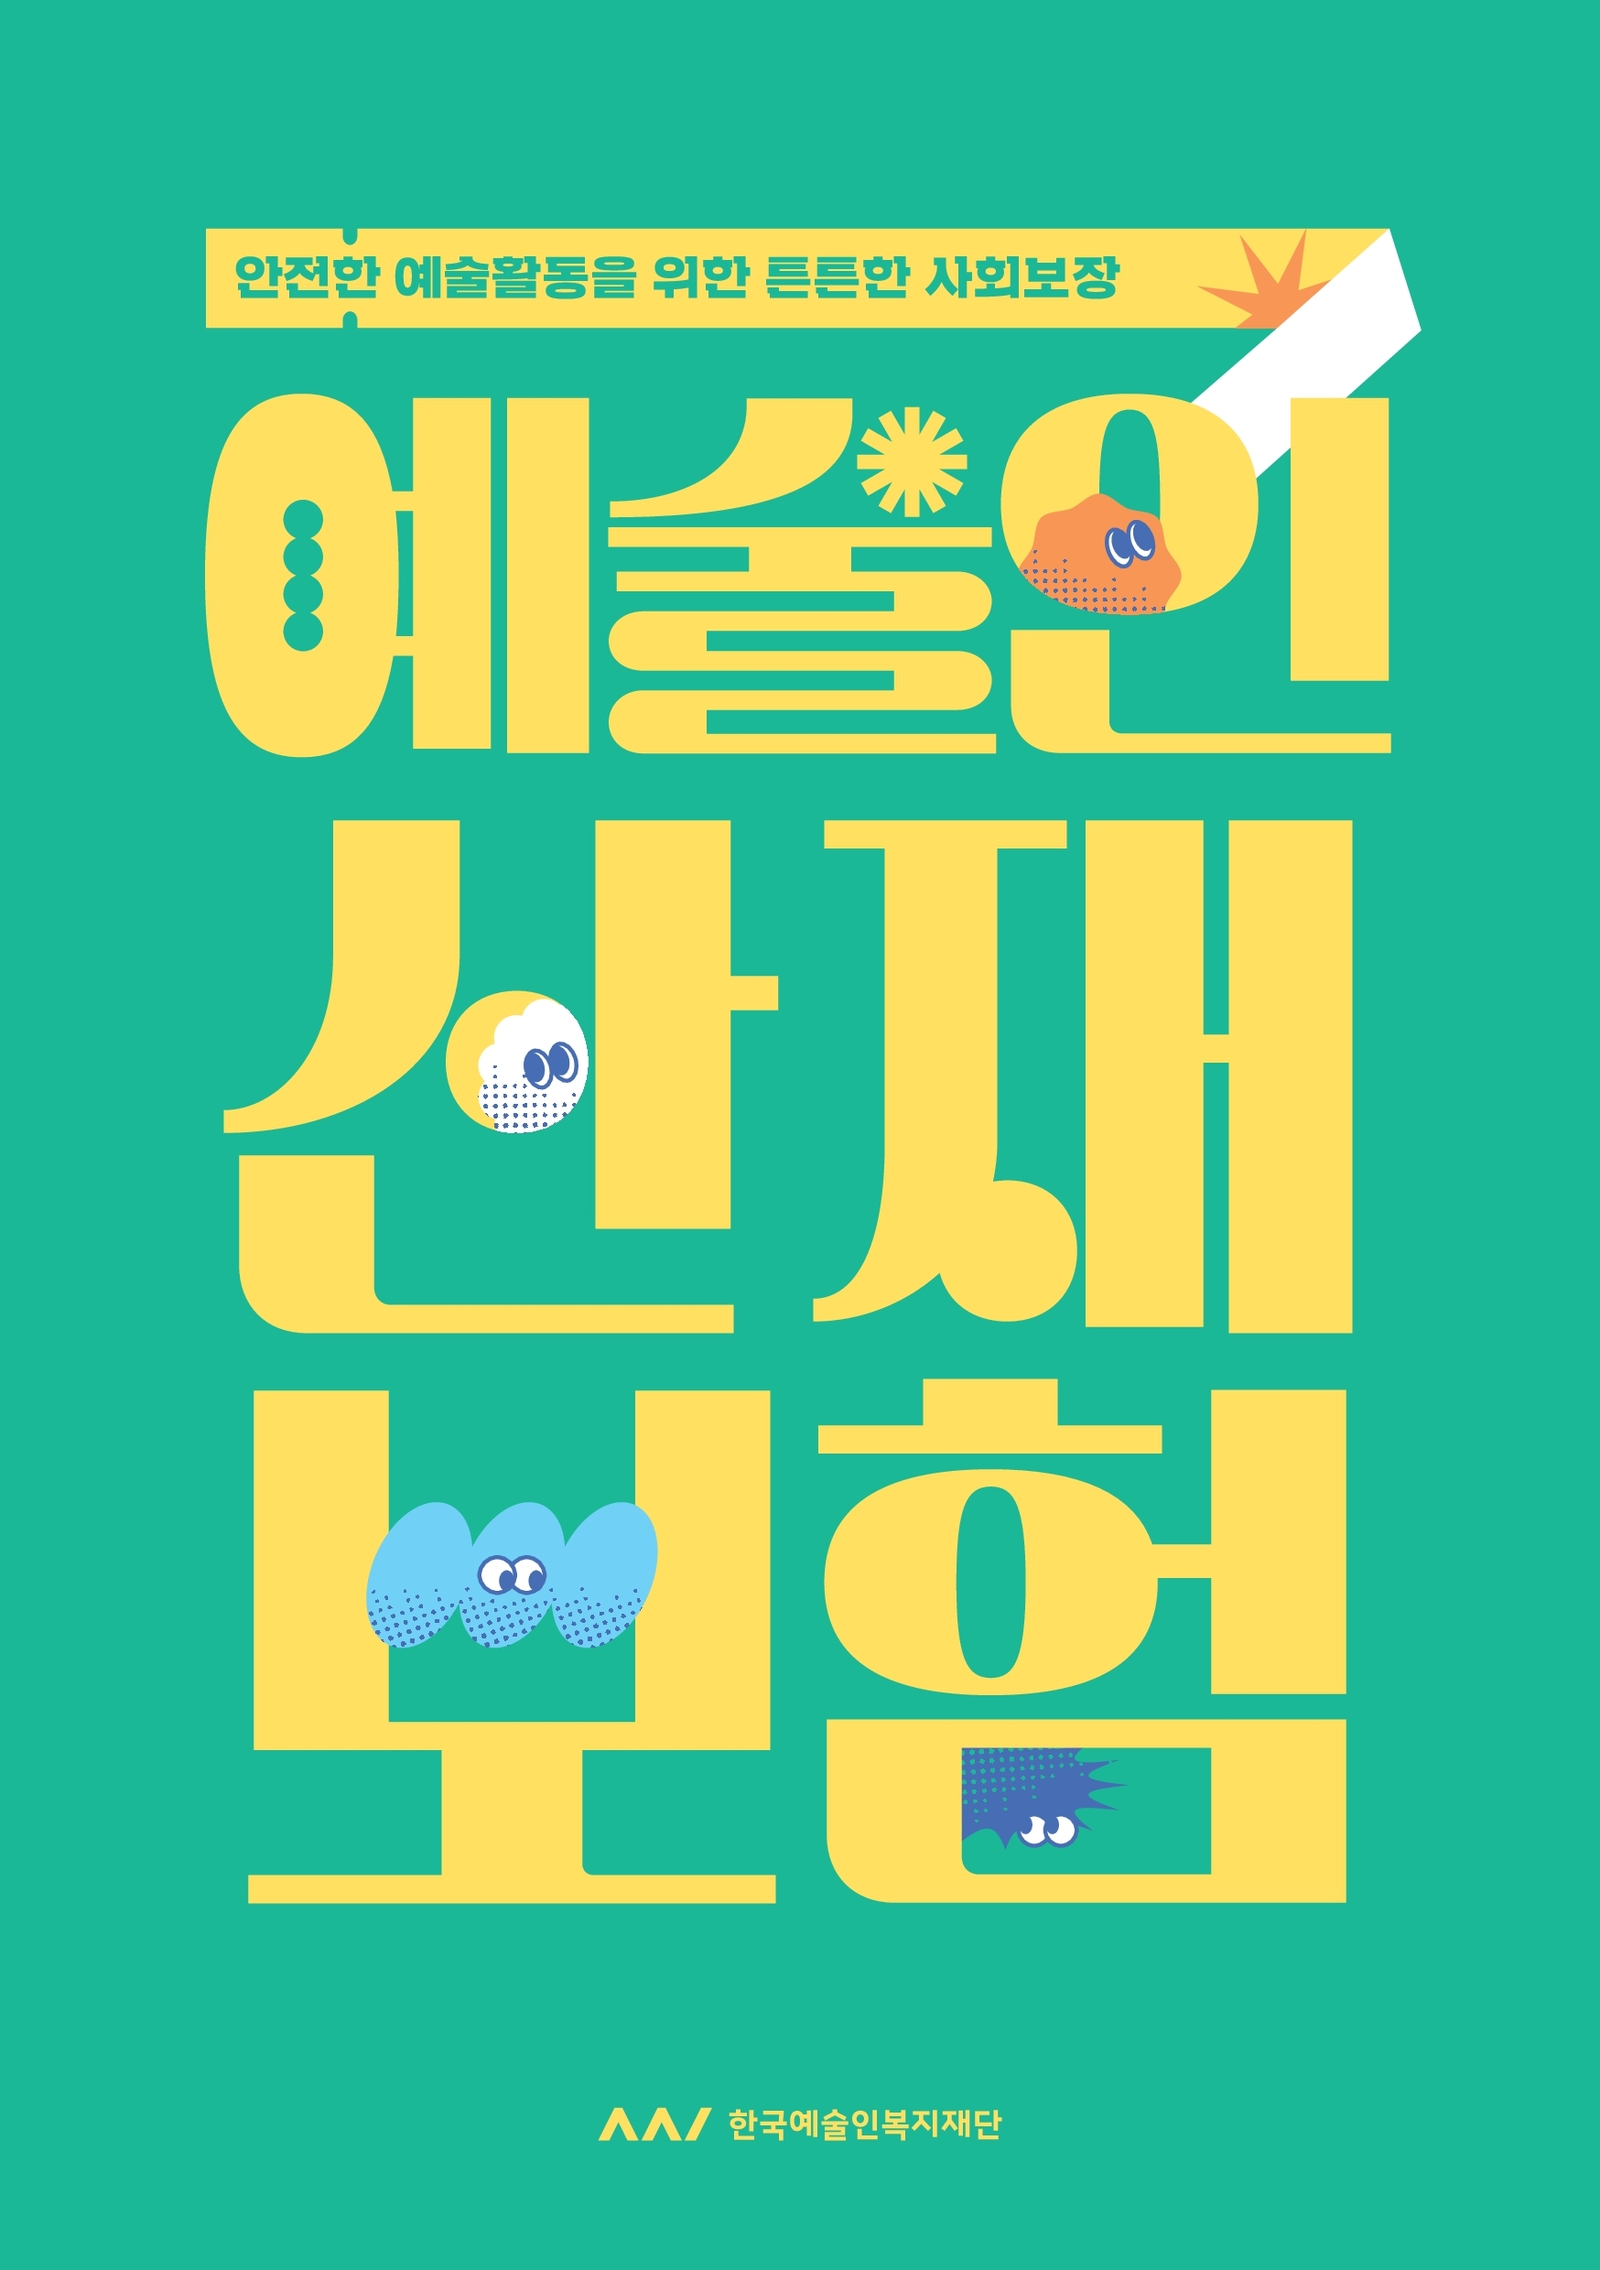 안전한 예술활동을 위한 든든한 사회보장 예술인산재보험 한국예술인복지재단 로고